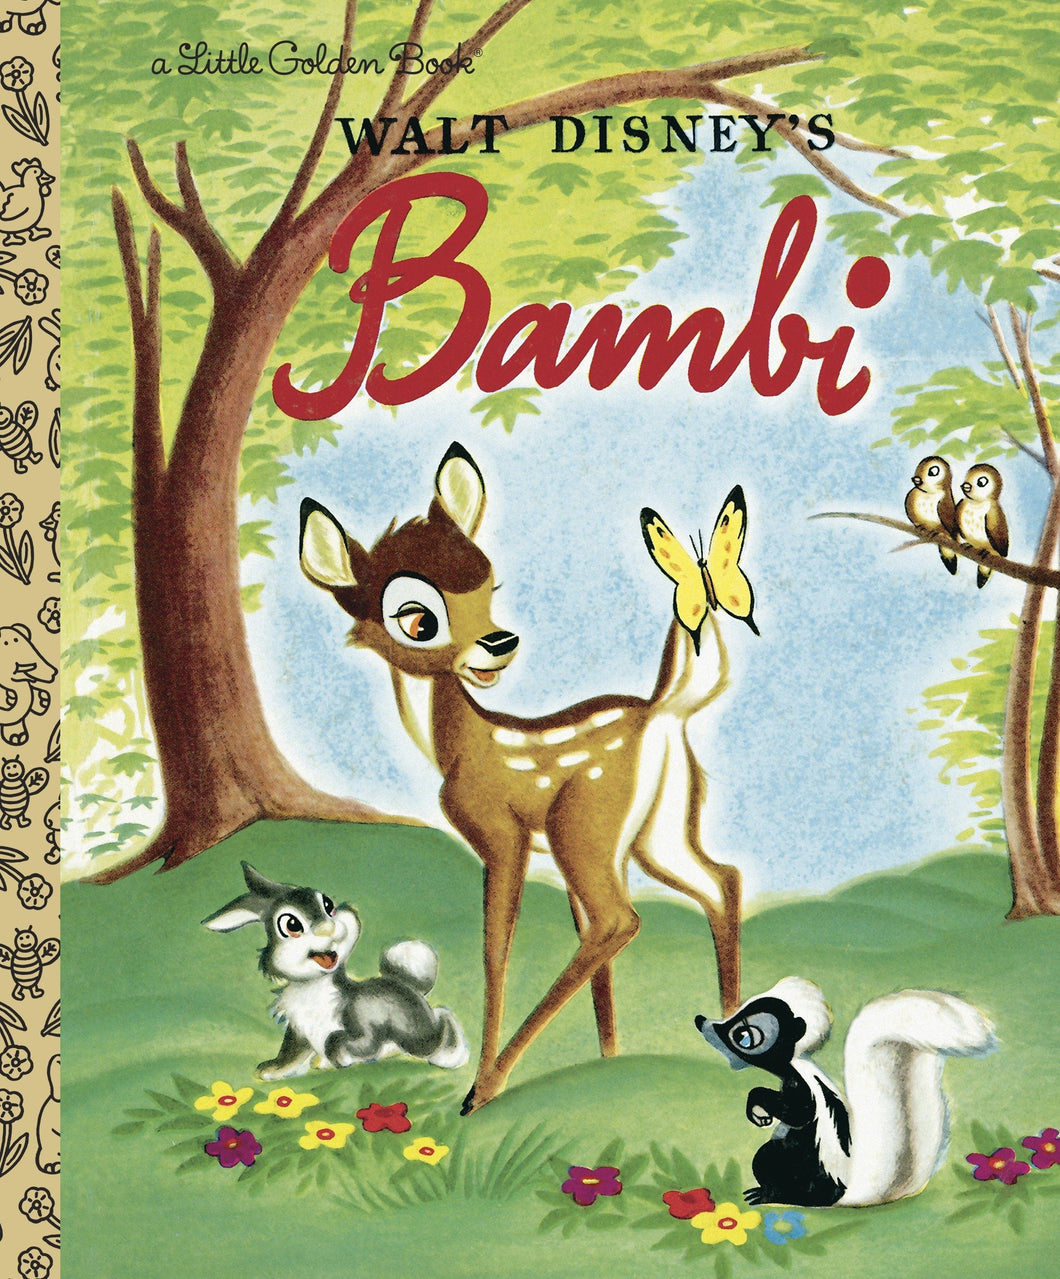 Bambi (Disney Classic) [Golden Books & Walt Disney Studio]